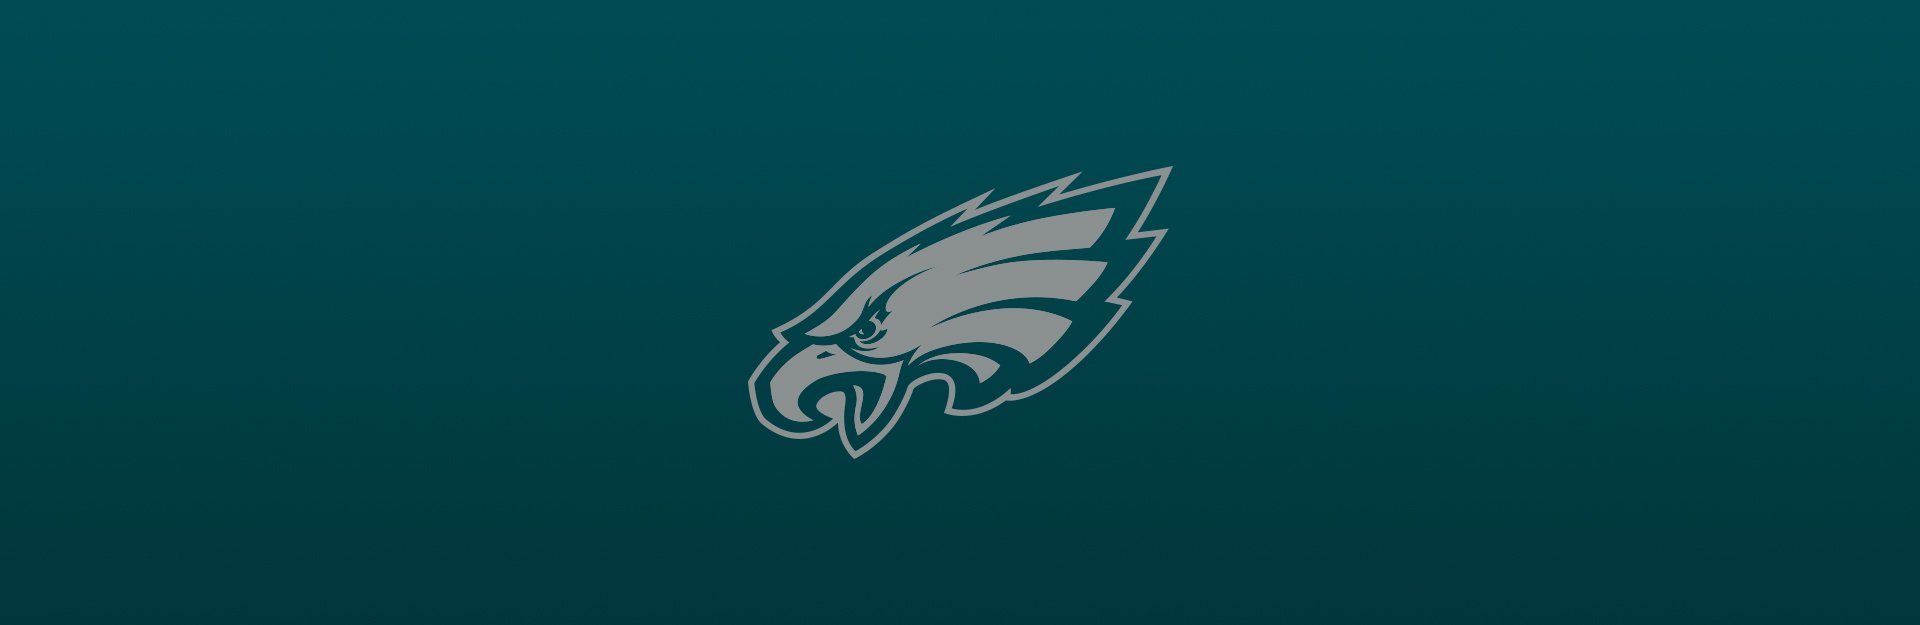 Philadelphia Eagles logo overlaid on blue-green background